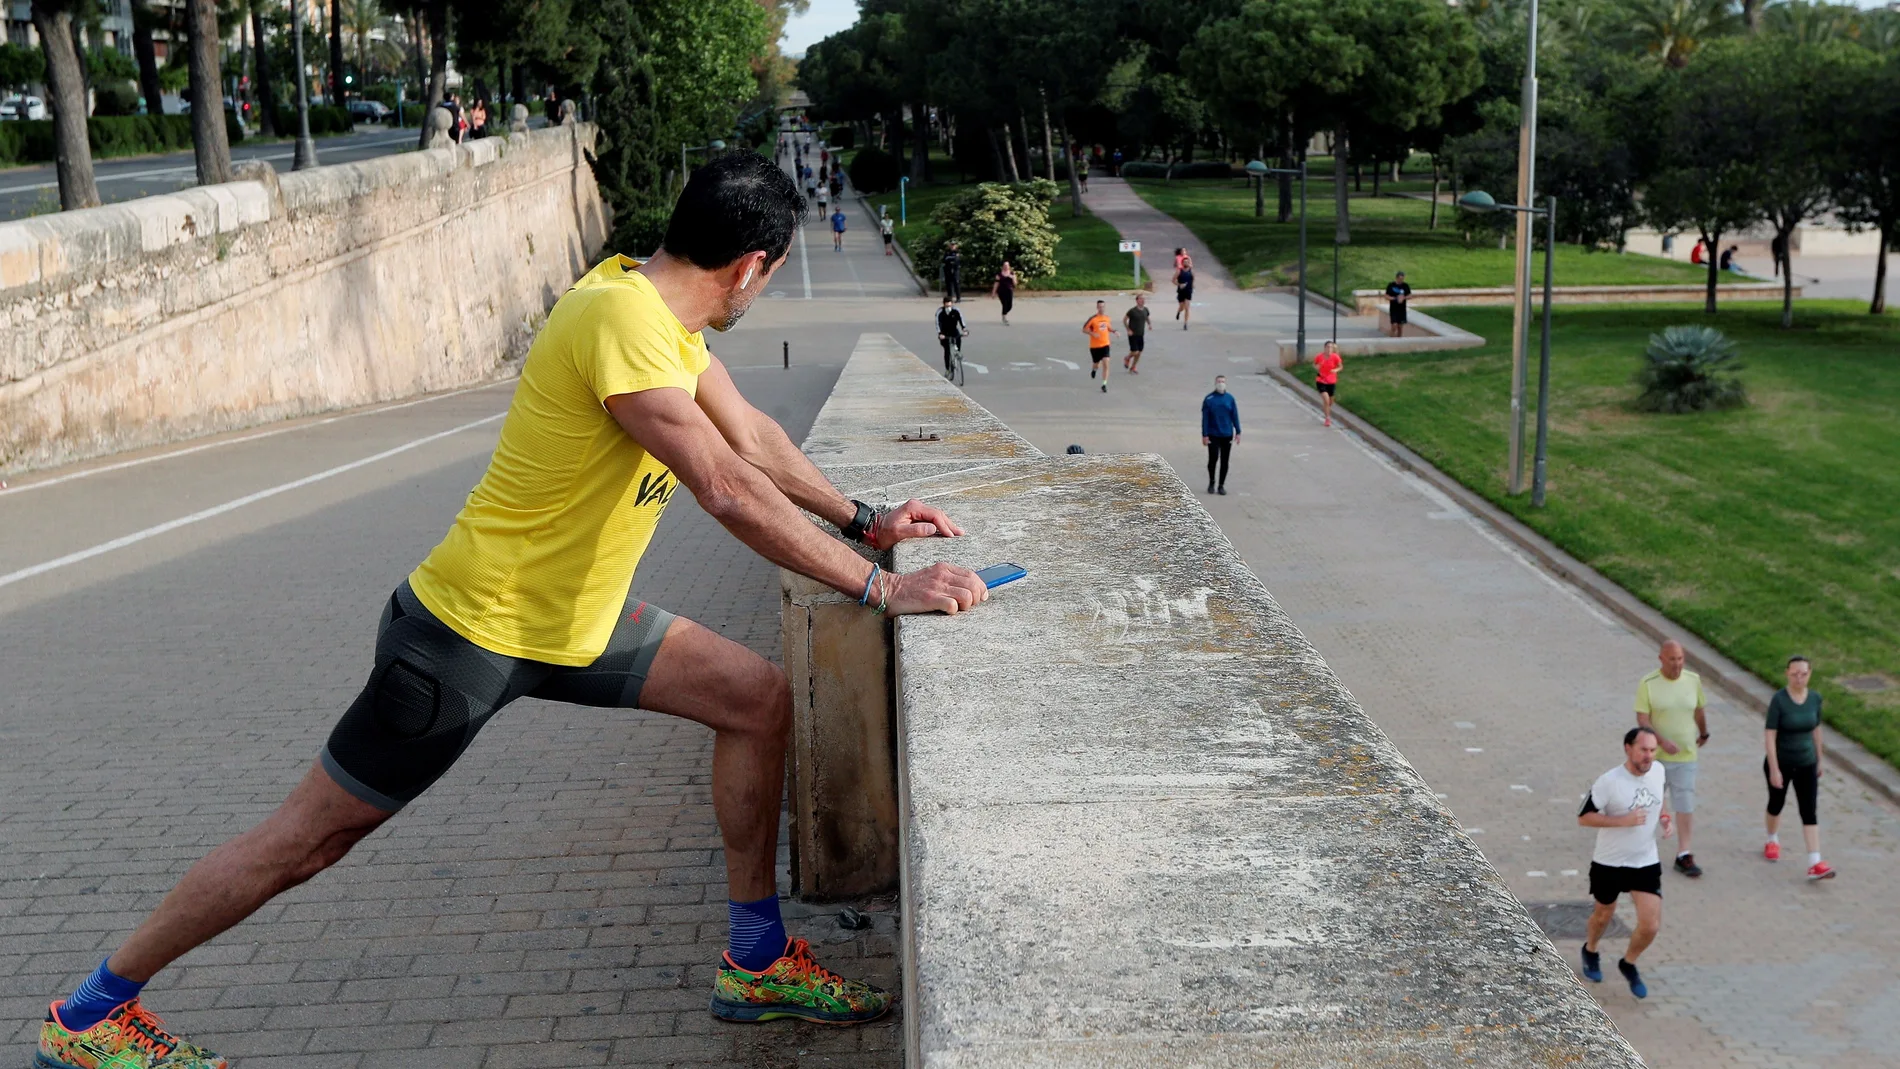 València la "ciudad del running", vuelve a la actividad física en sus calles tras mes y medio de confinamiento